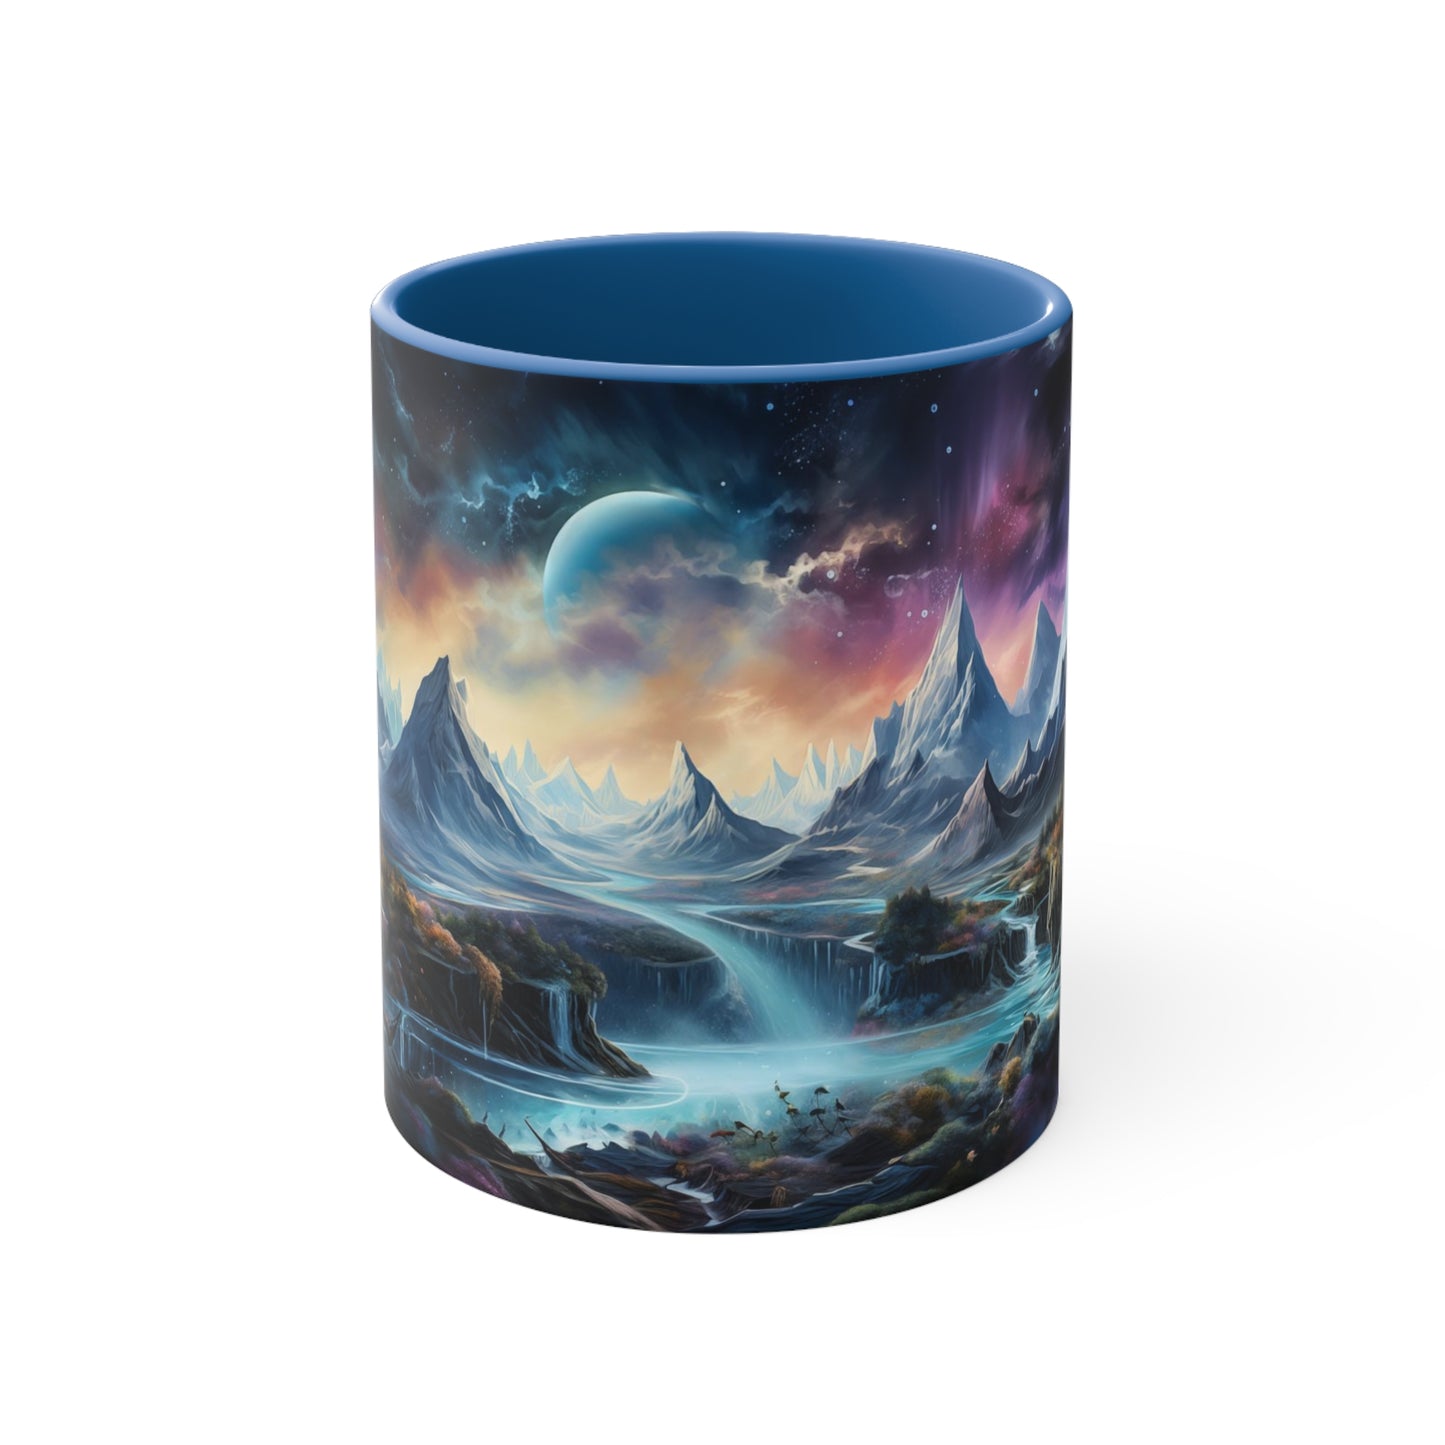 Cosmic Fantasy Landscape Coffee Mug, 11oz